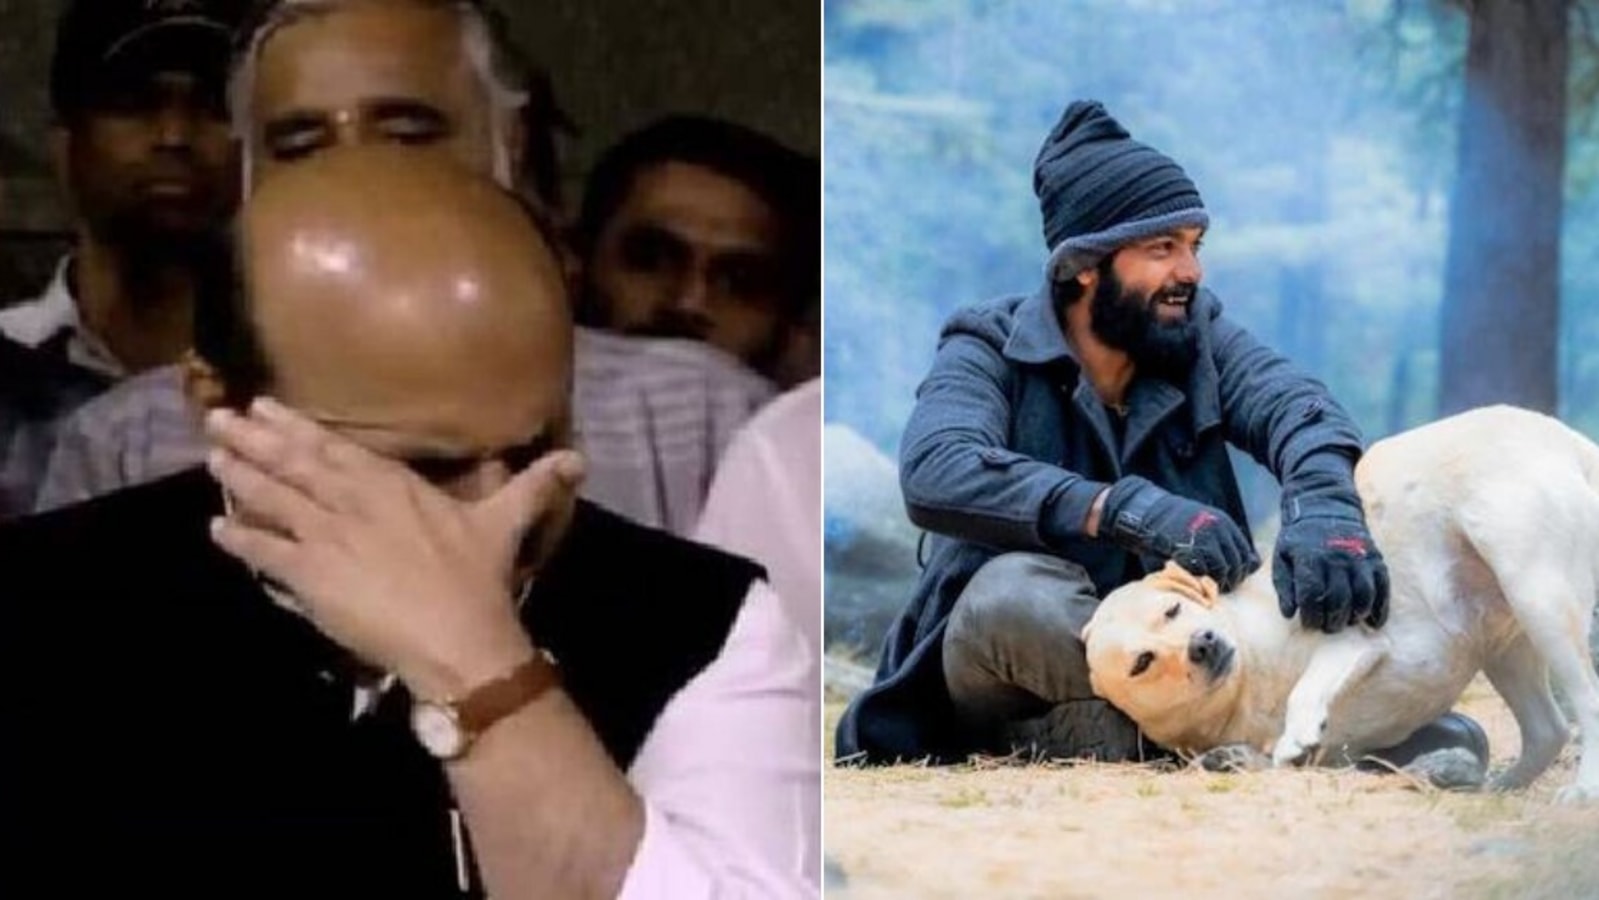 777 Charlie: Rakshit Shetty film moves Karnataka CM Basavaraj Bommai to tears: ‘It is superb’